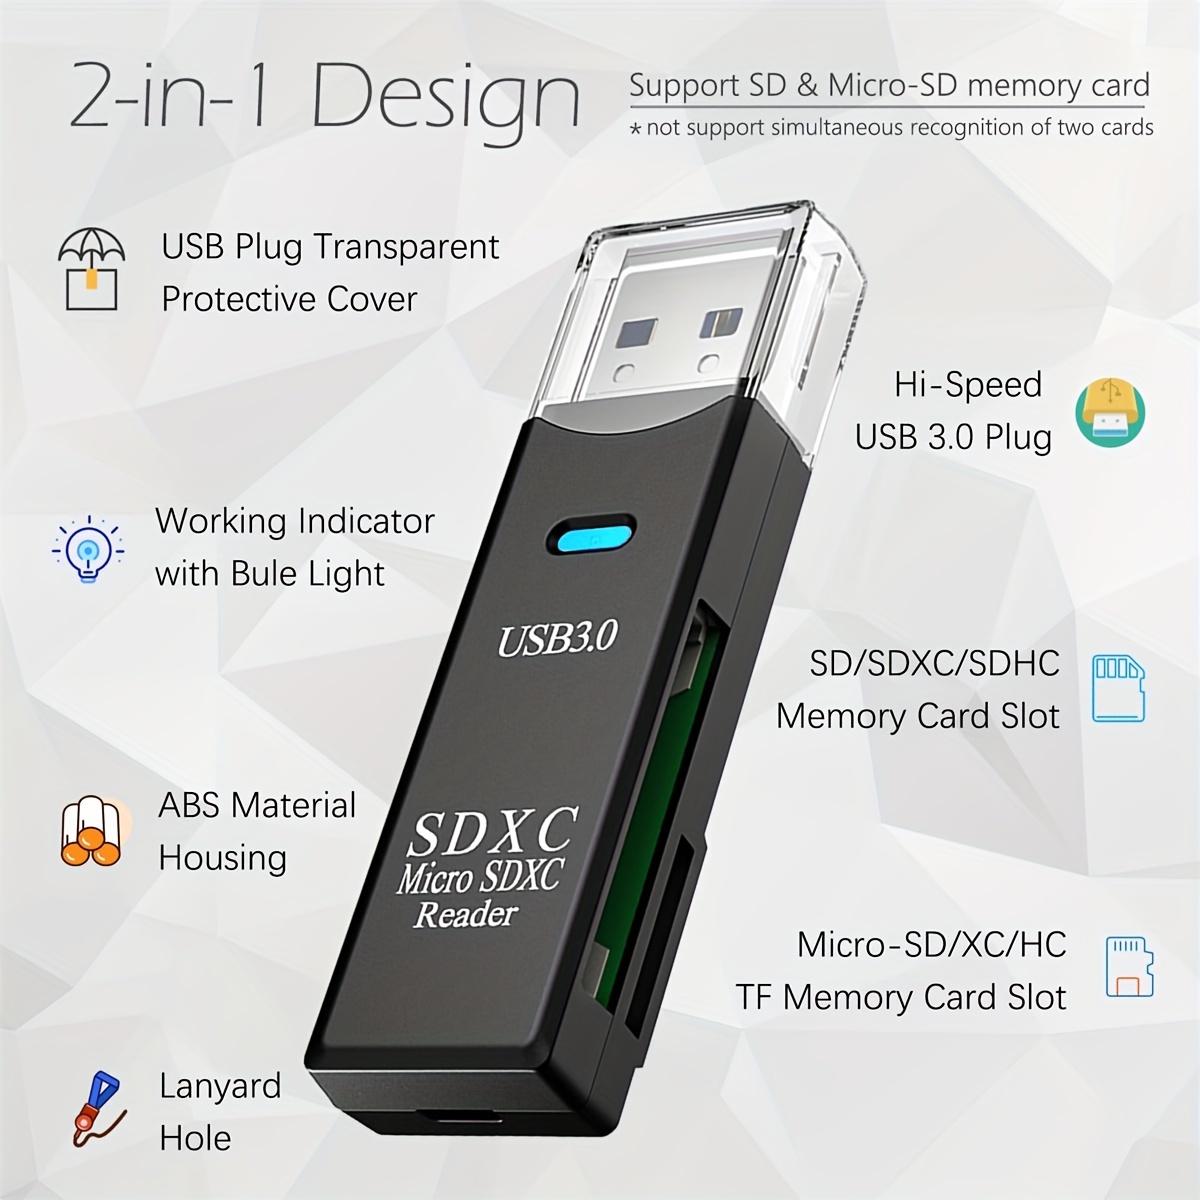 Lecteur de carte SD / Micro USB